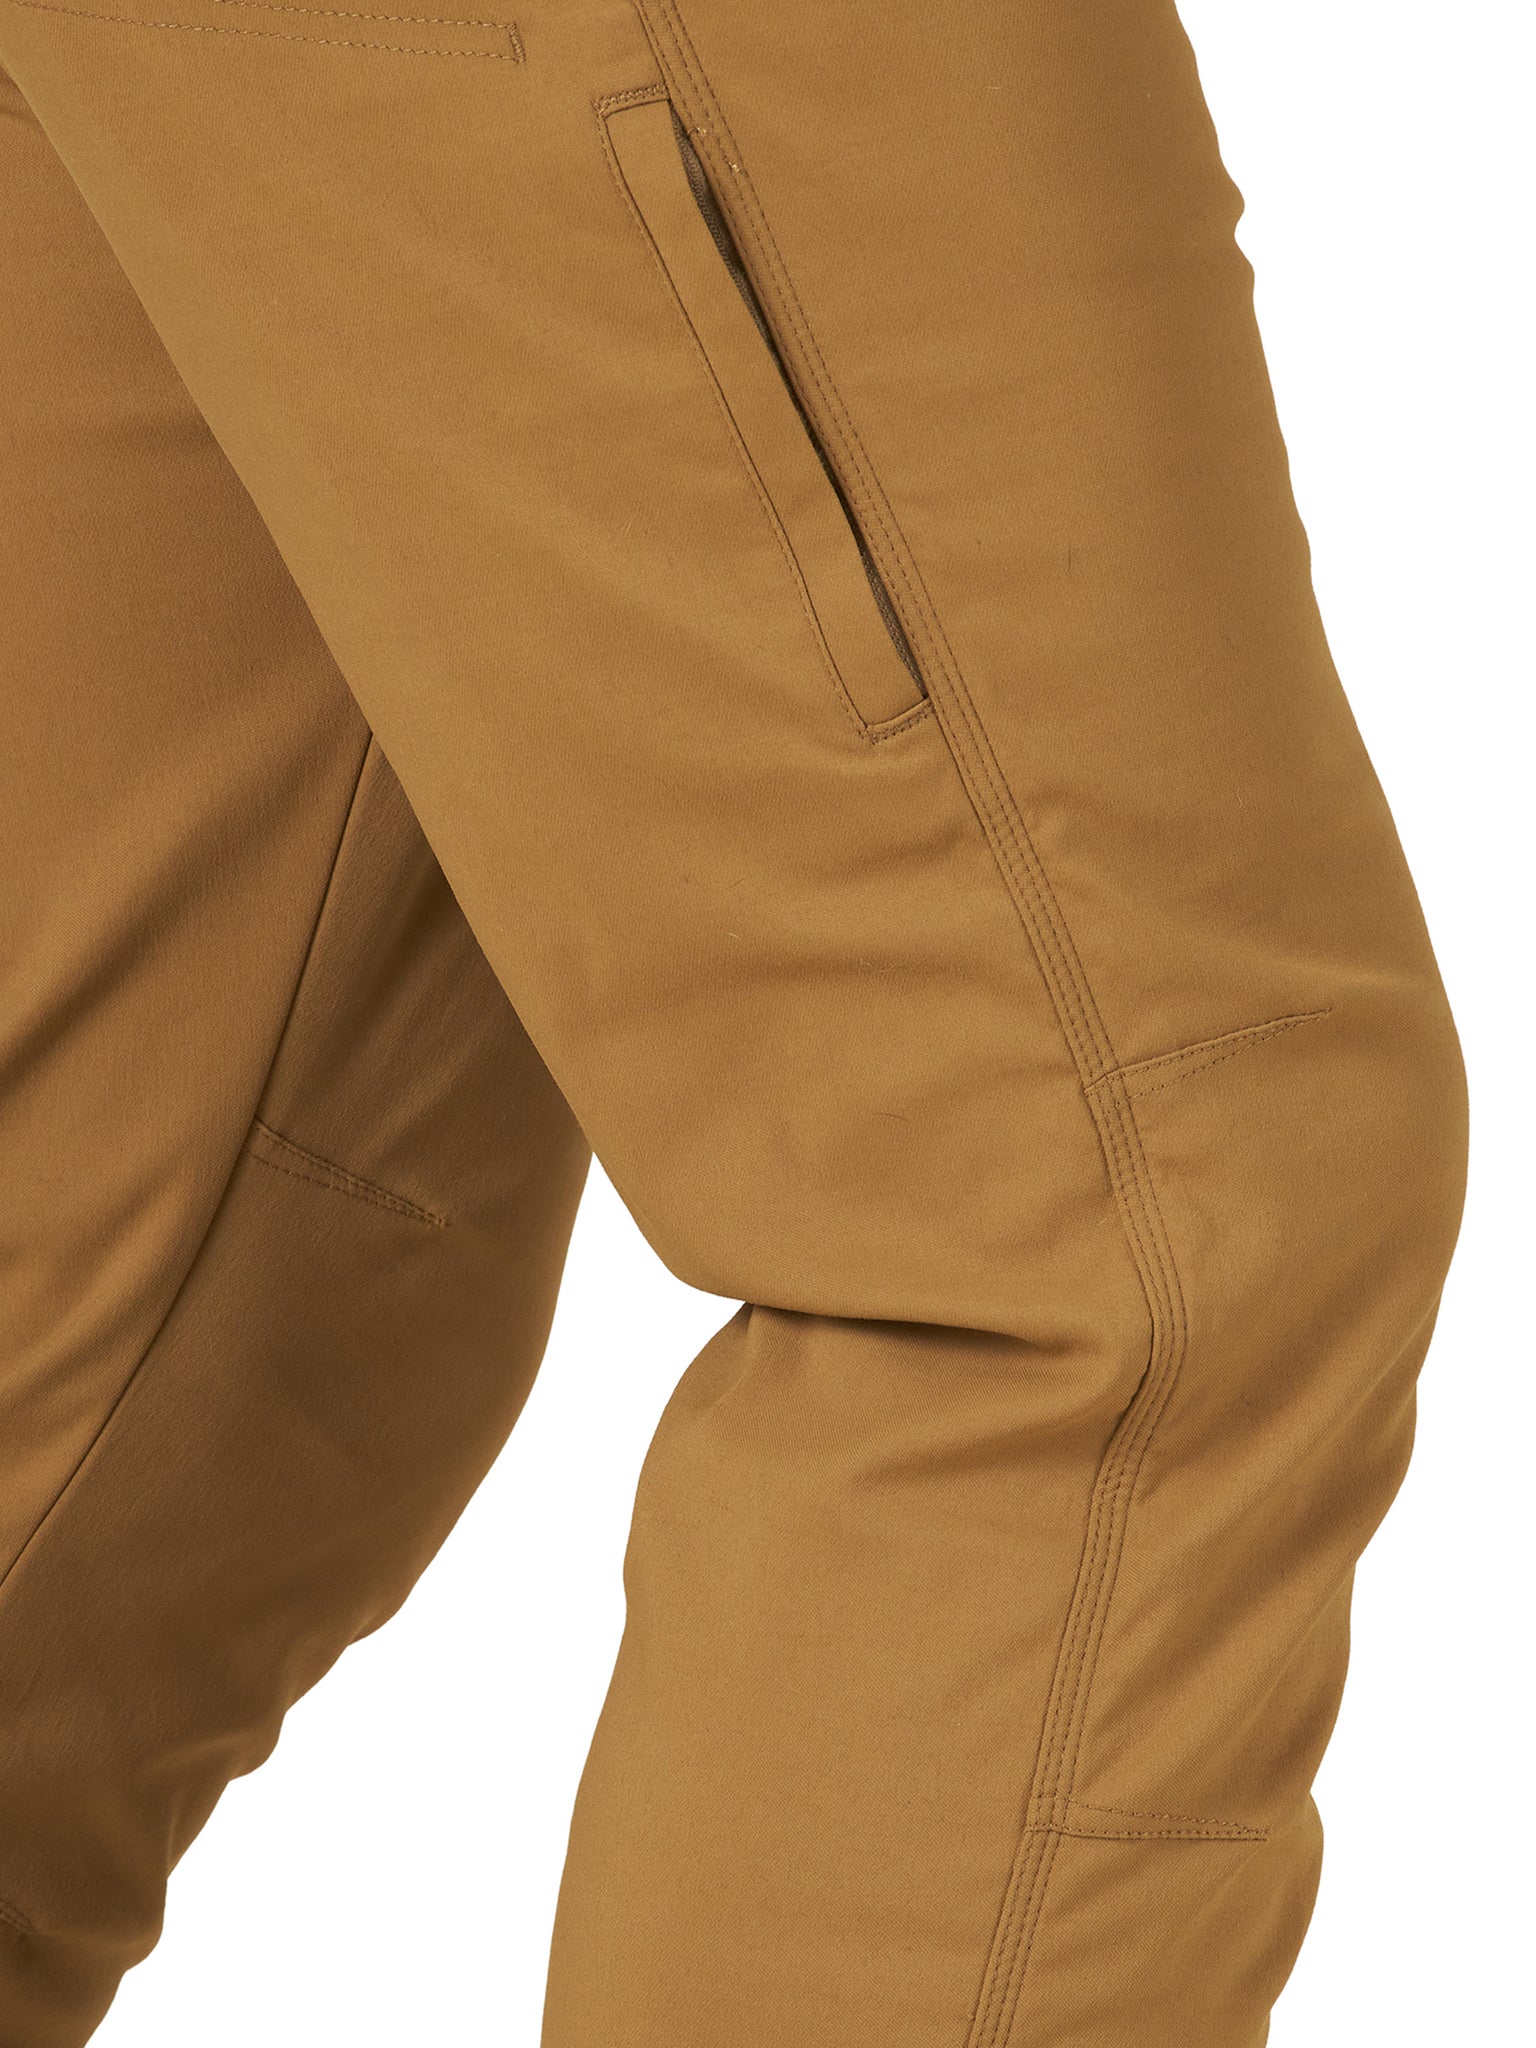 Wrangler Men's ATG Fleece Lined Pant, Falcon, 34X32 